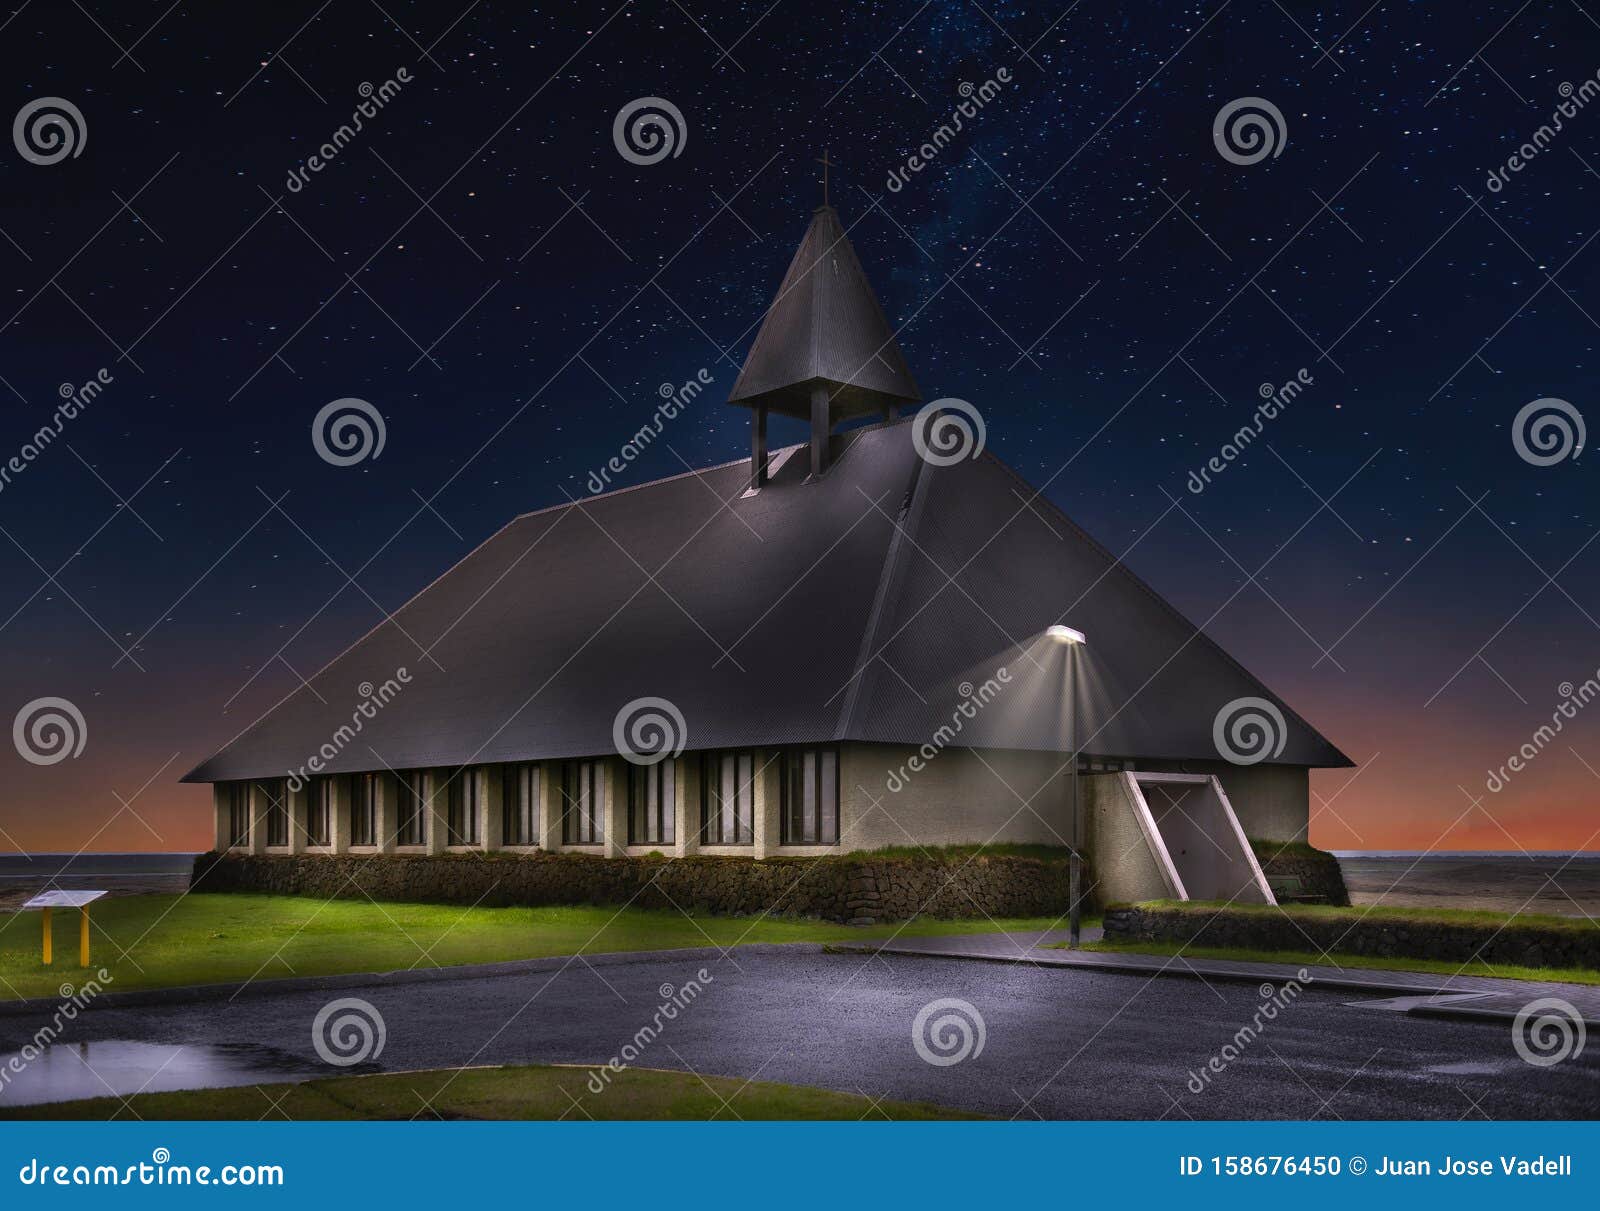 church of ÃÅ¾orlÃÂ¡kskirkja en islandia - Ãâlfus municipality - suÃÂ°urland